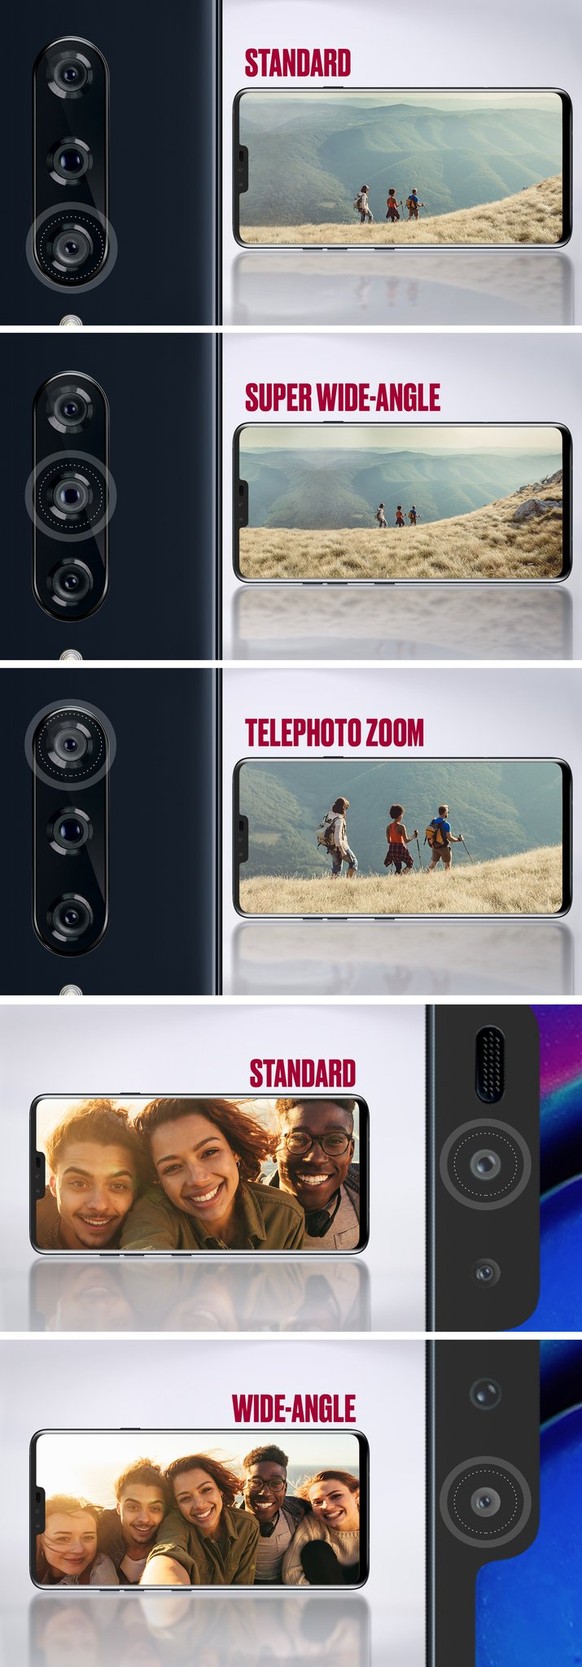 Das ebenfalls neue LG V40 hat eine Triple-Kamera auf der Rückseite und eine Dual-Kamera auf der Vorderseite.